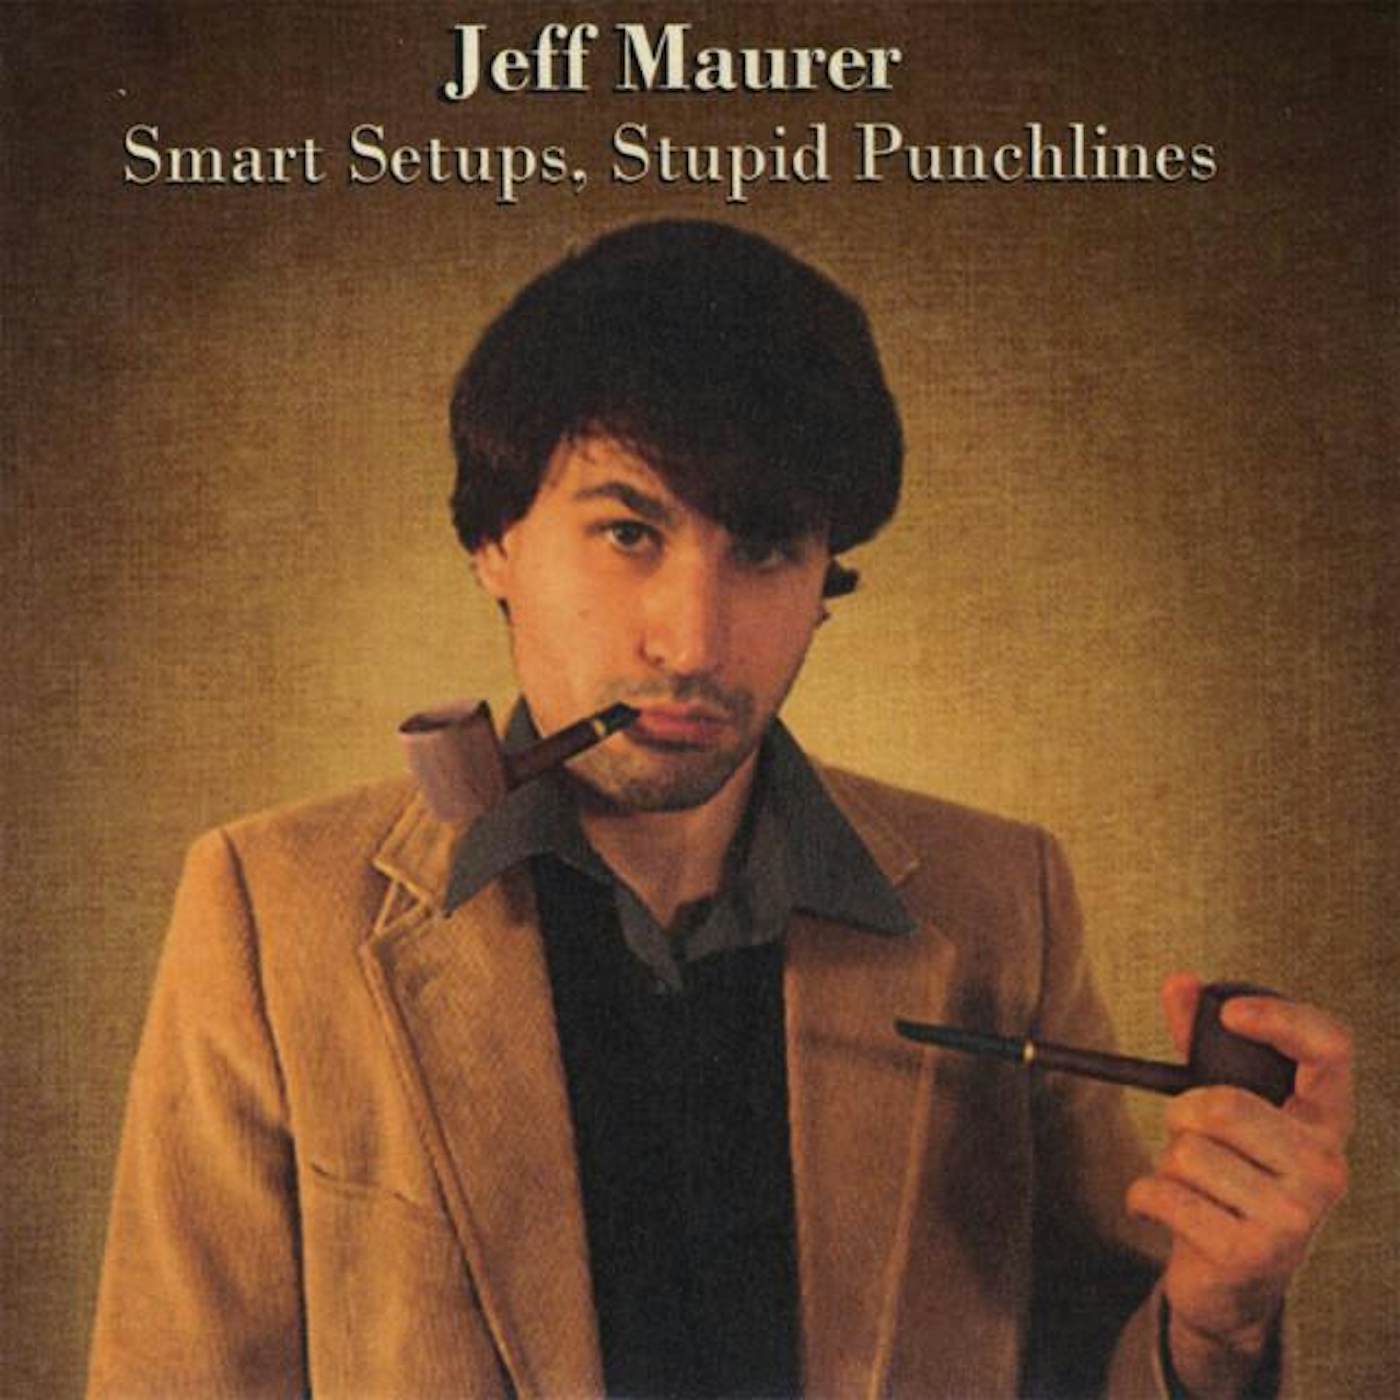 Jeff Maurer